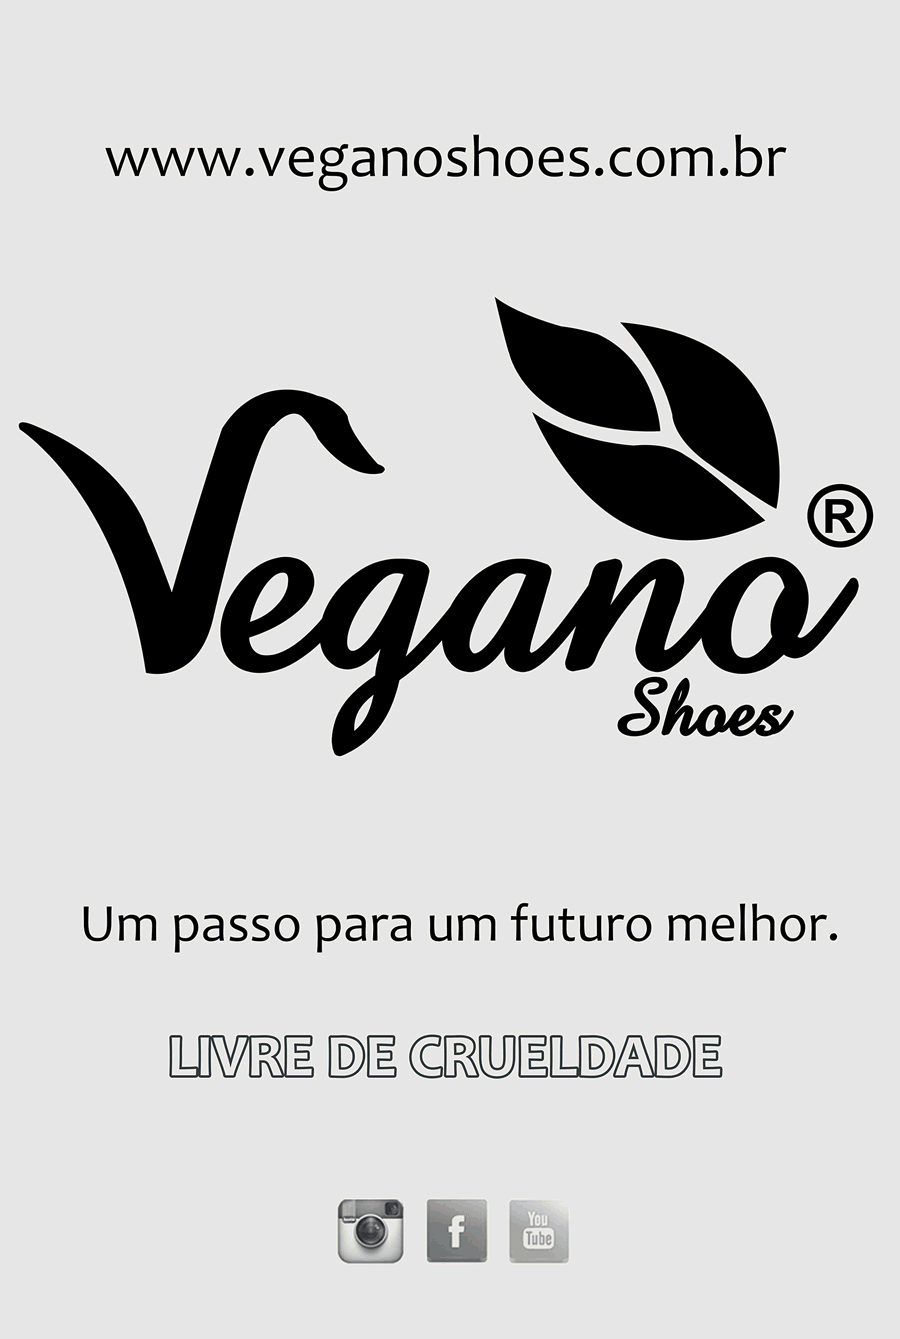 empresa-vegana-vegano-shoes-faz-campanha-no-metro-em-sao-paulo-sp-eco-sapatos-sustentaveis